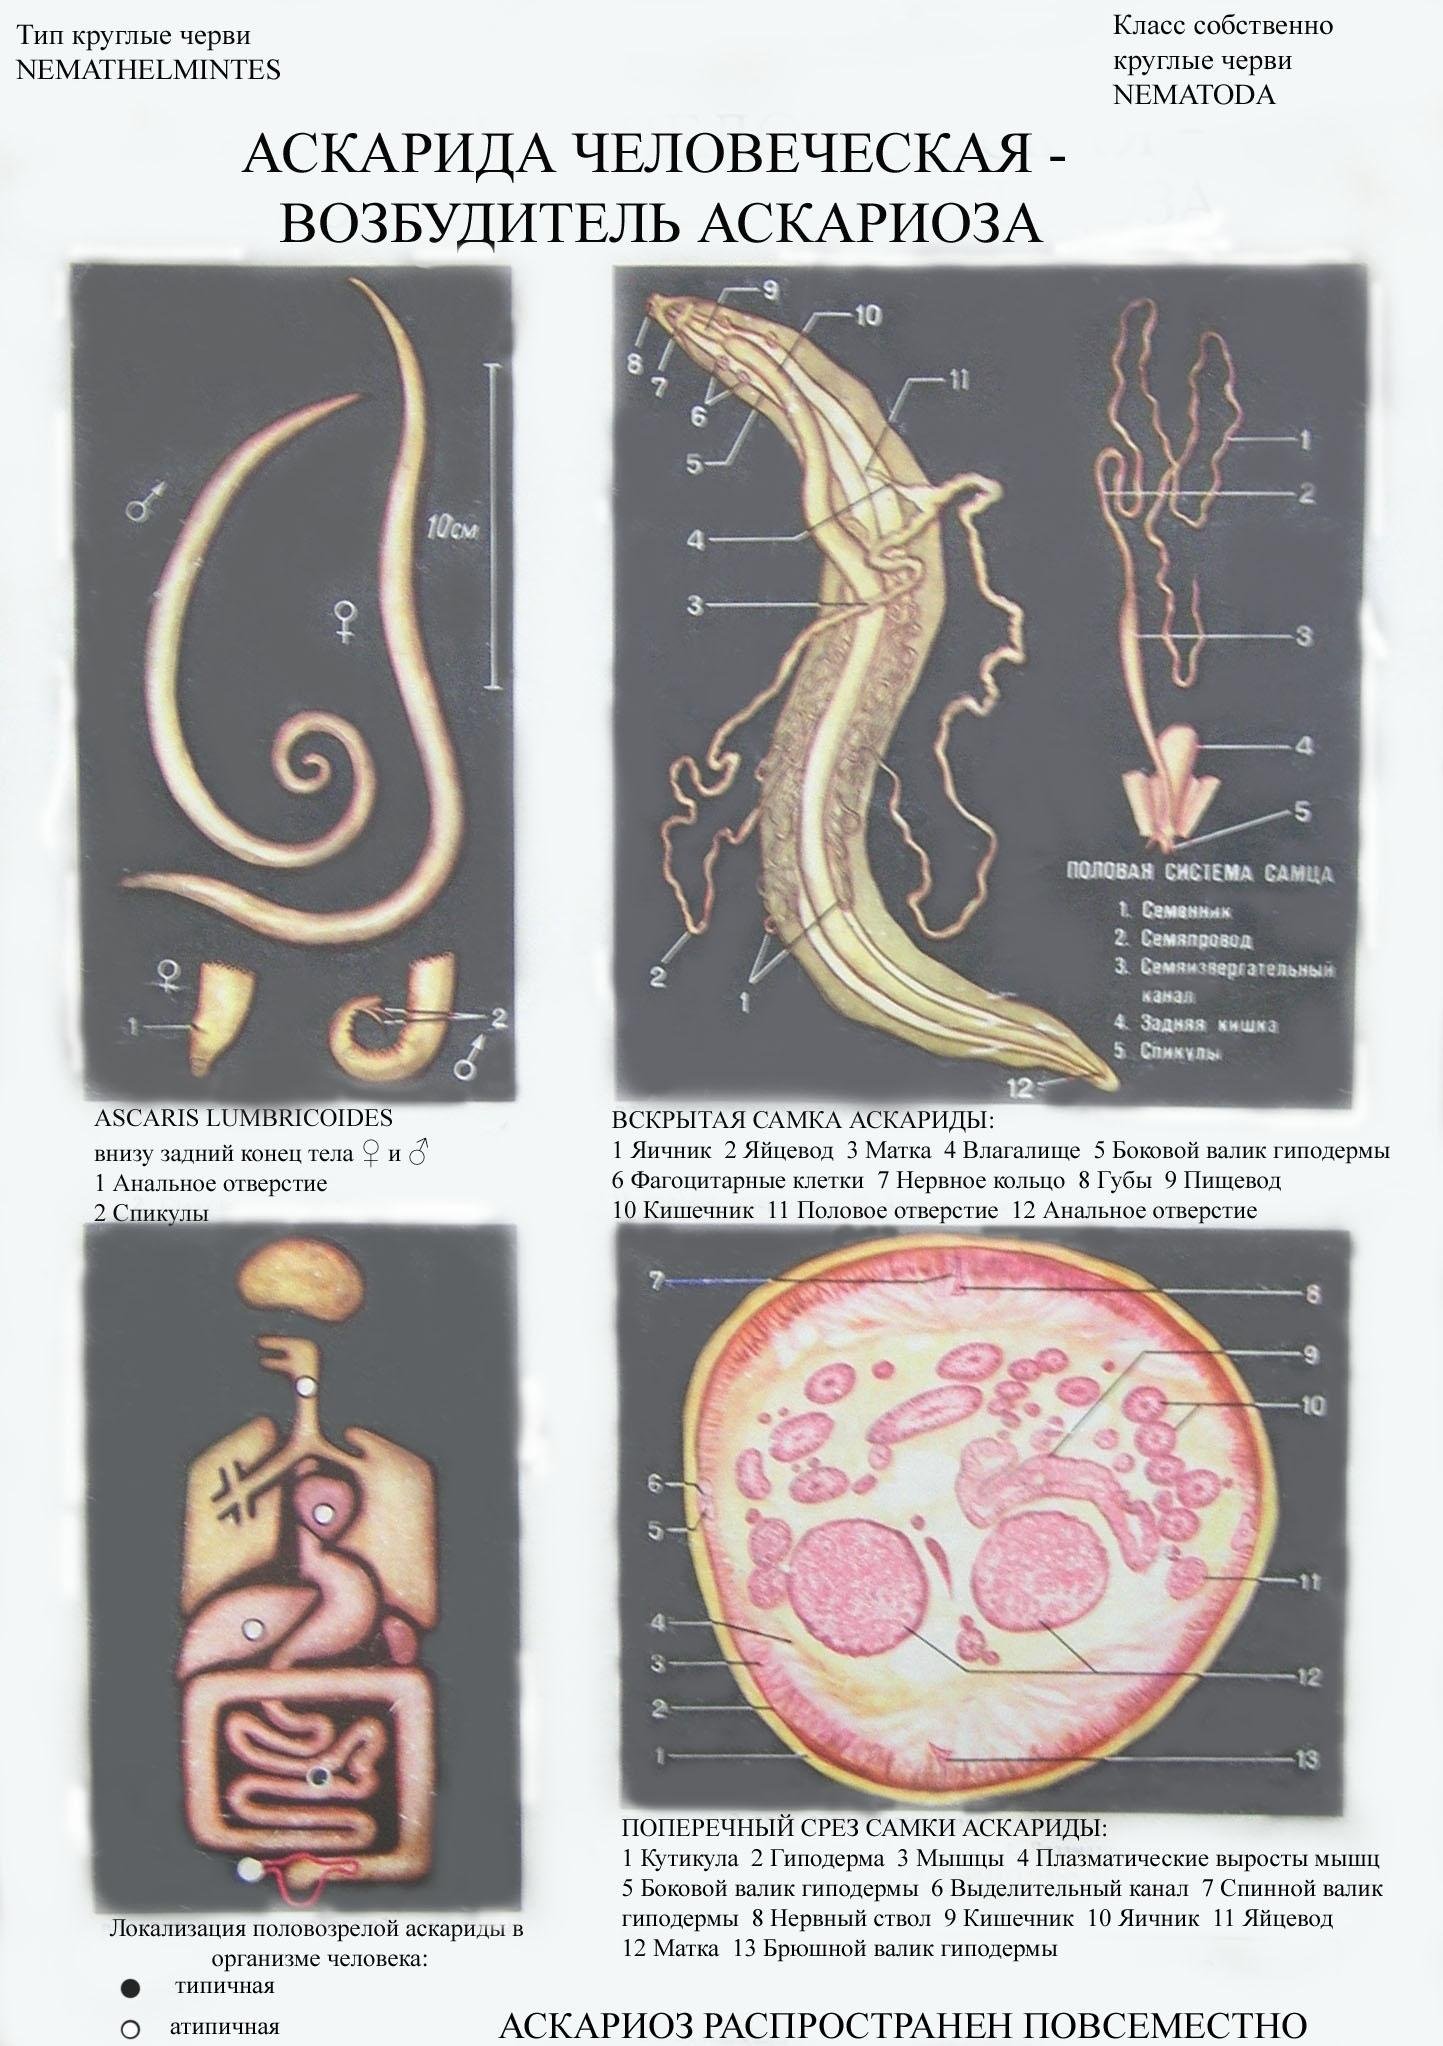 К какому типу животных относят аскариду. Круглые черви аскарида человеческая. Тип круглые черви аскарида человеческая.